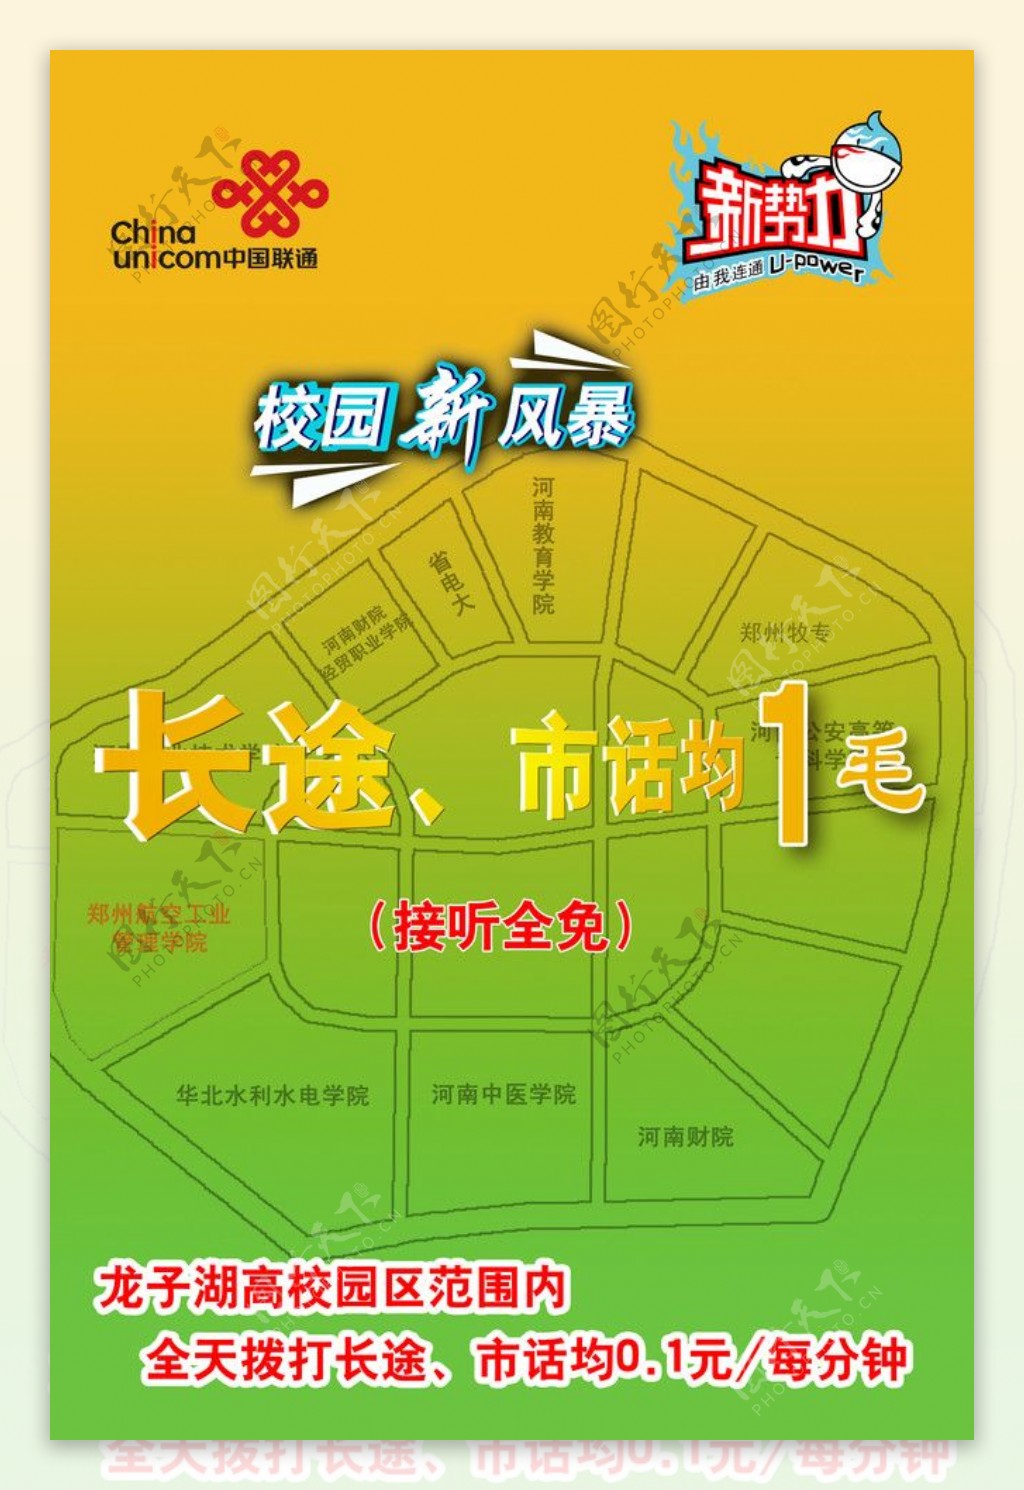 中国联通校园计划宣传海报图片